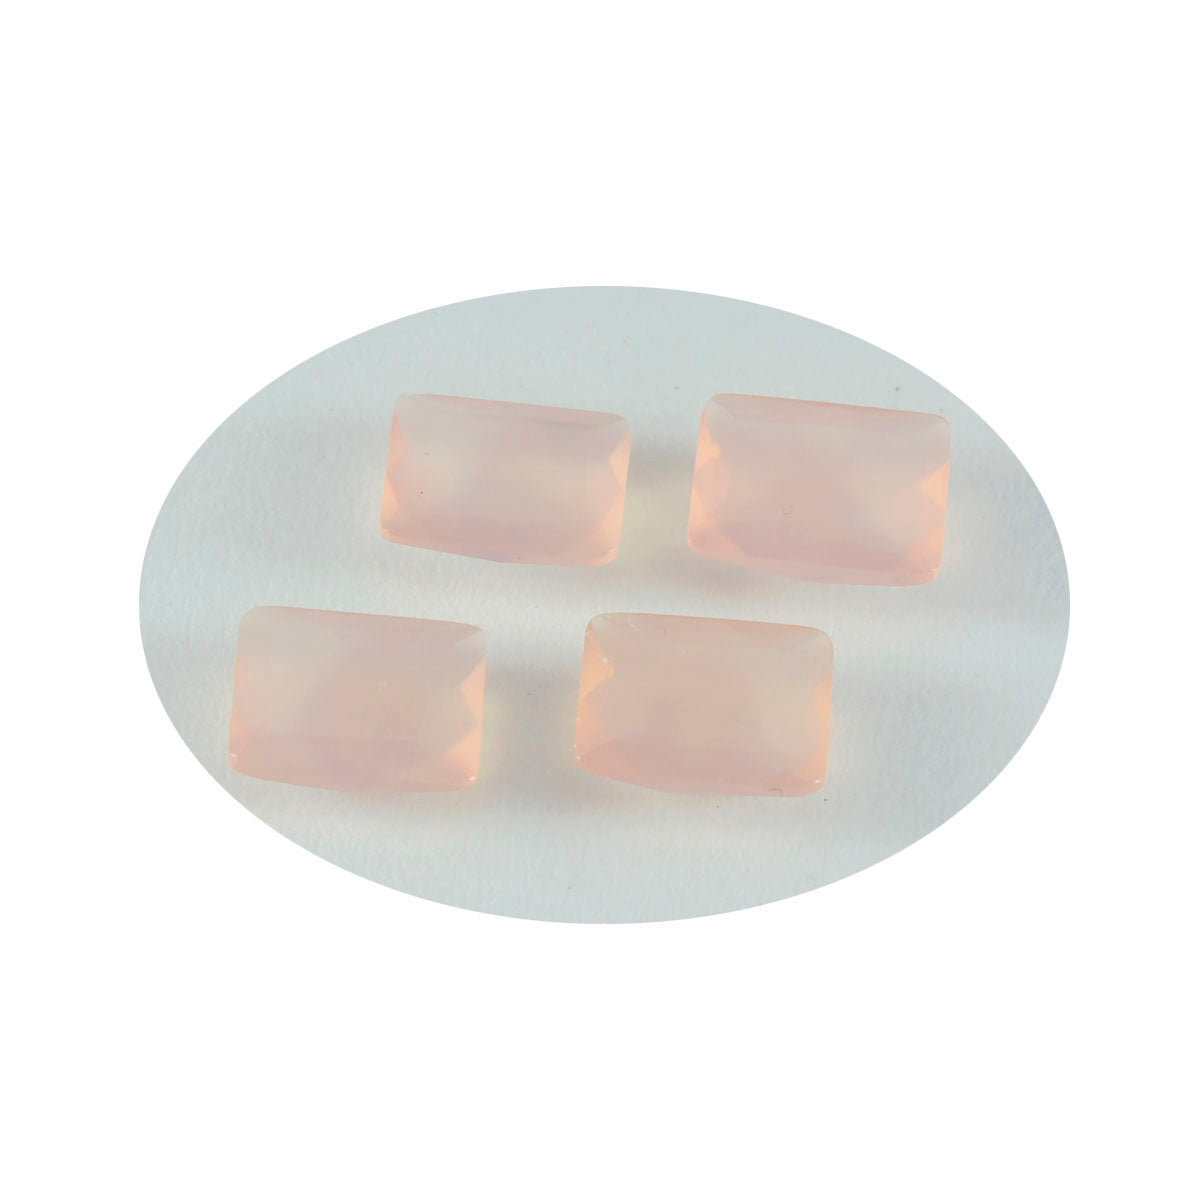 Riyogems 1pc quartz rose à facettes 7x9mm forme octogonale beauté qualité pierre précieuse en vrac